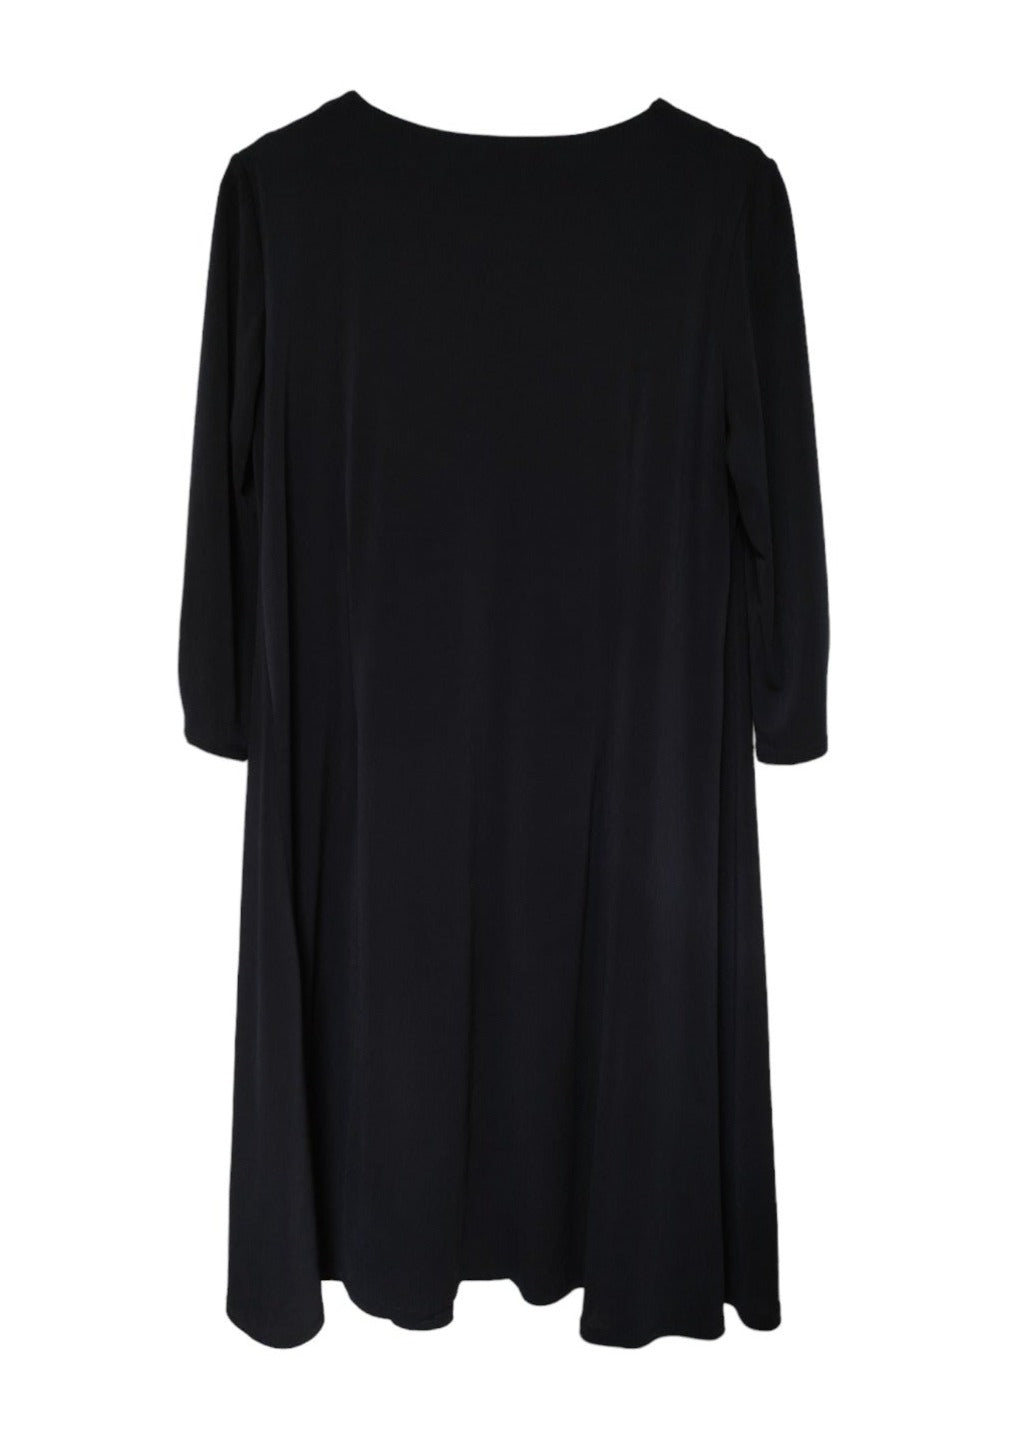 Ελαστικό Midi Φόρεμα LAURA ASHLEY σε Σκούρο Μπλε χρώμα (Large)